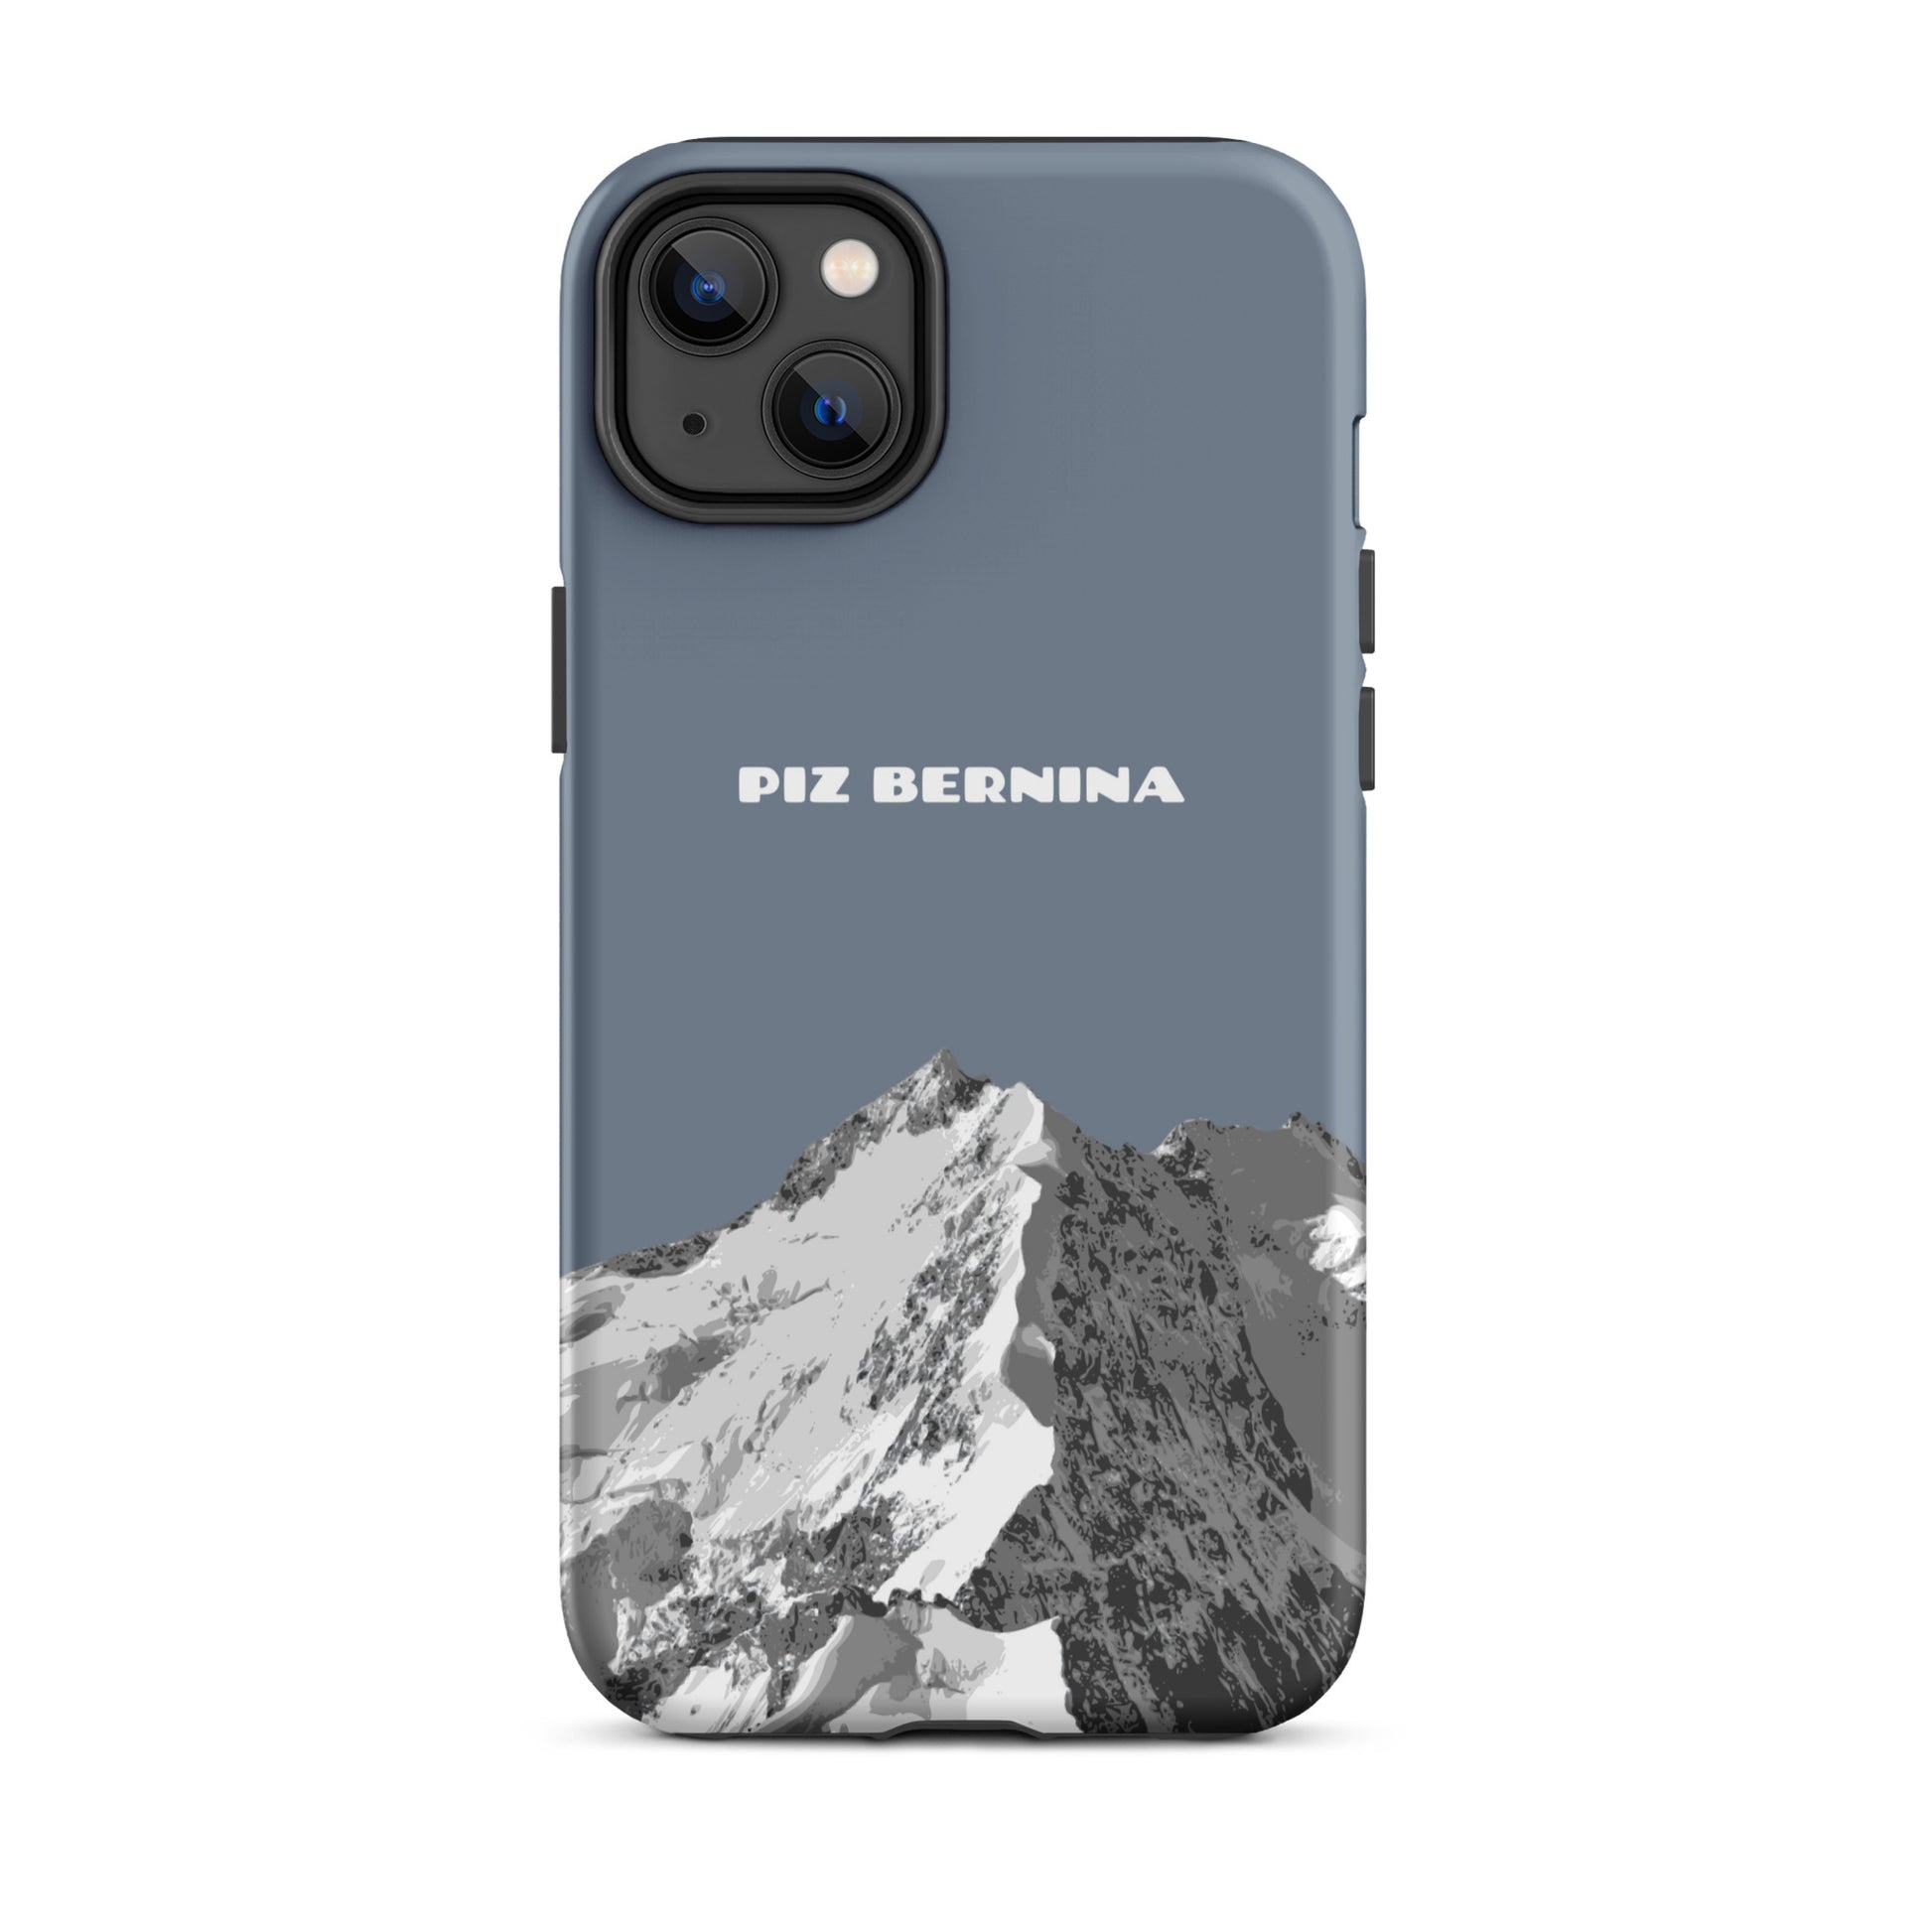 Hülle für das iPhone 14 Plus von Apple in der Farbe Schiefergrau, dass den Piz Bernina in Graubünden zeigt.